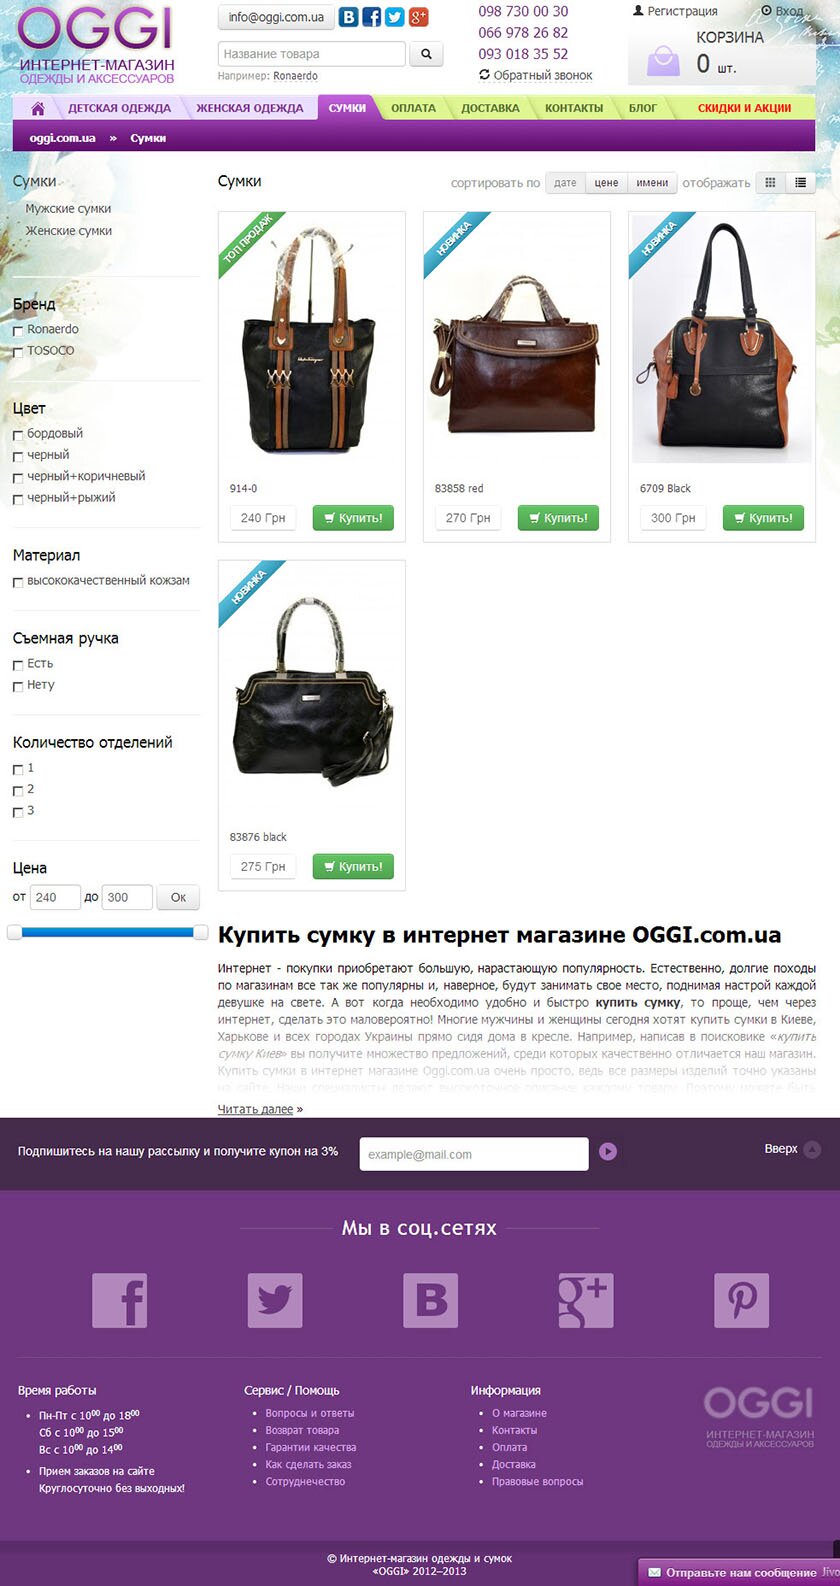 Интернет-магазин одежды и сумок OGGI